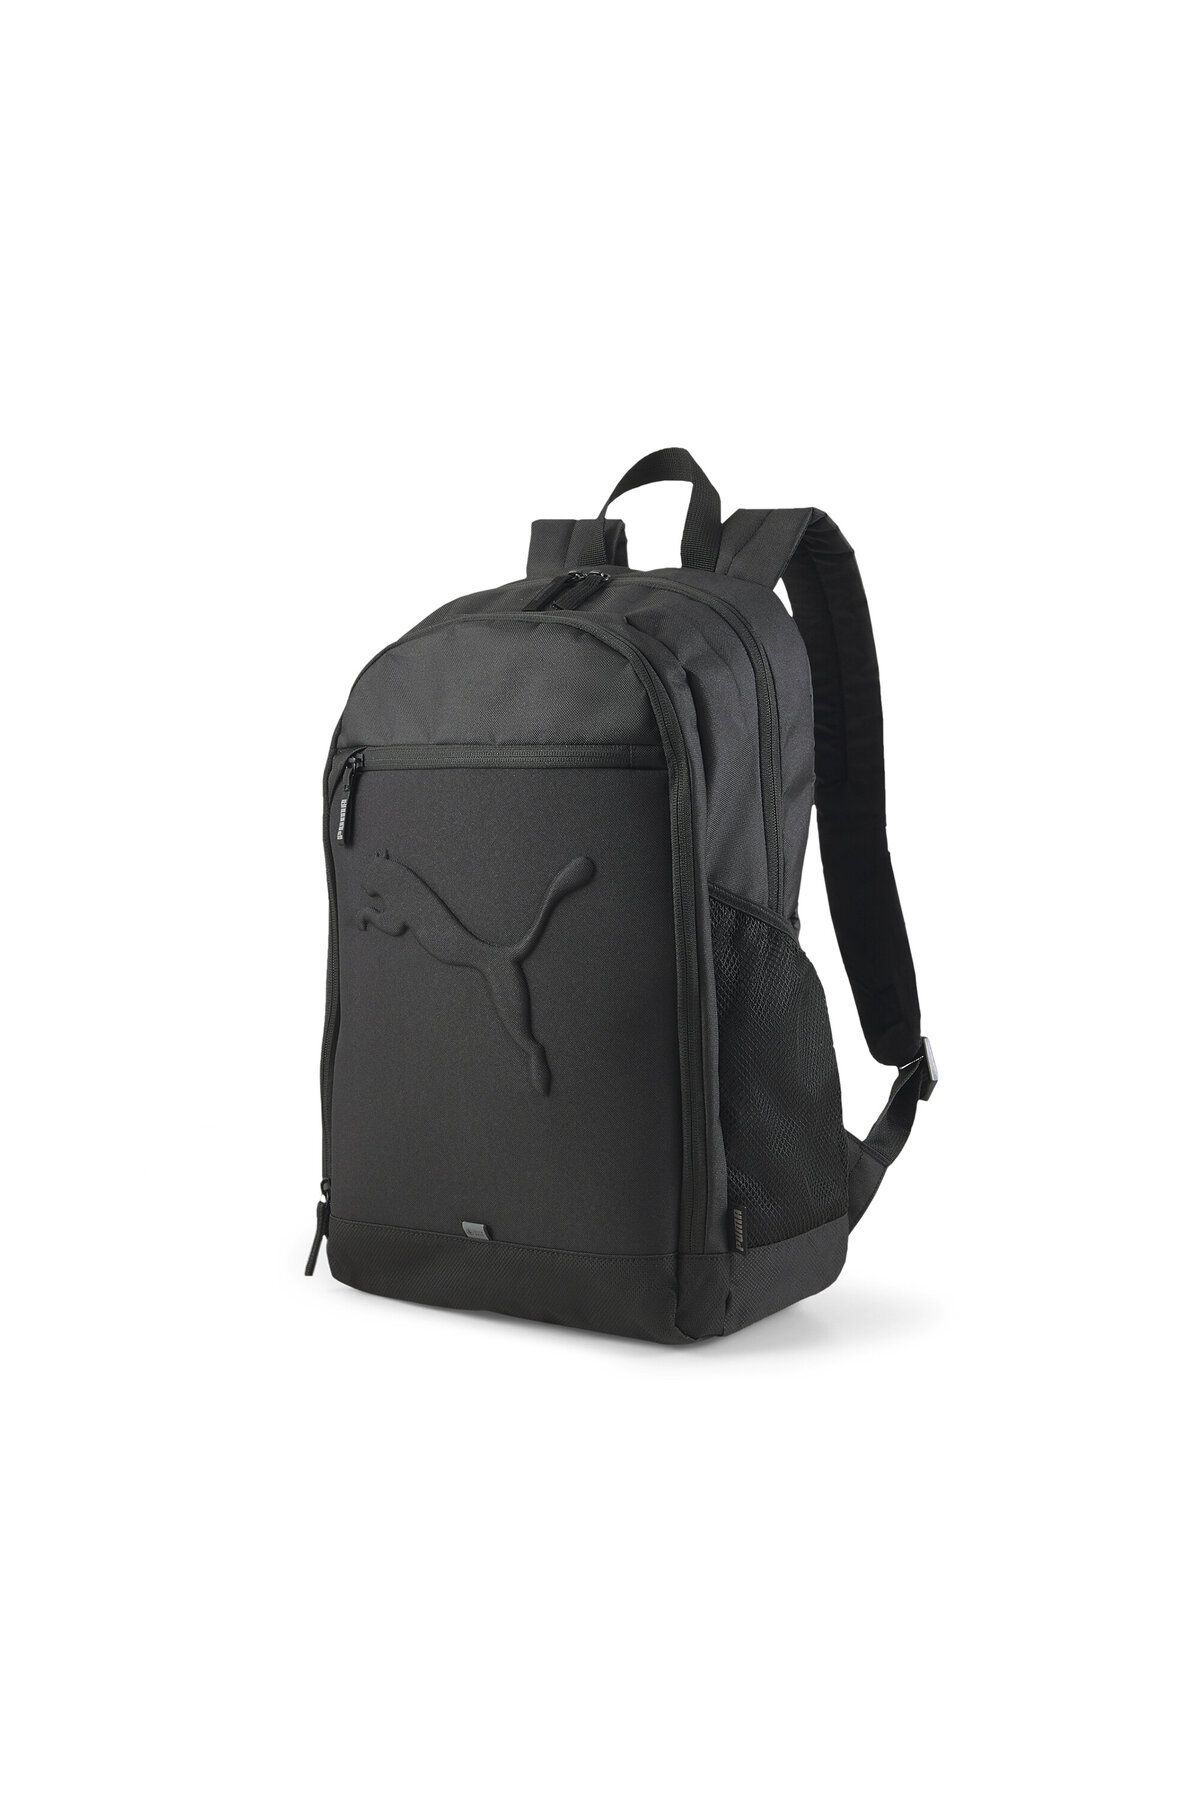 Puma Unisex Backpack Günlük Kullanıma Uygun Okul ve Sırt Çantası